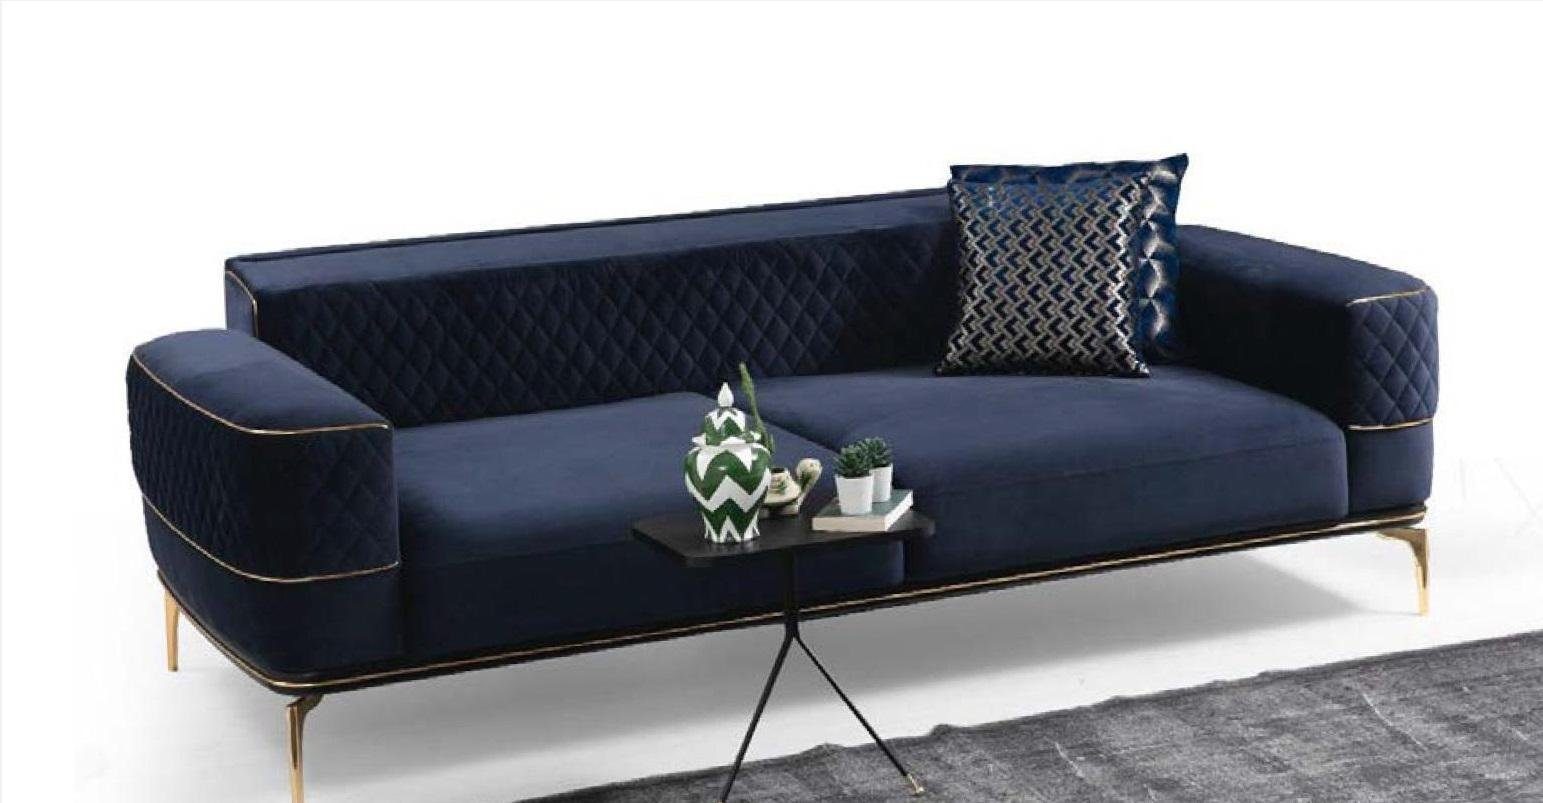 JVmoebel Sofa, Dreisitzer Sofa 3 Sitzer Couches Sofas Luxus Gepolsterte Couch Stoff